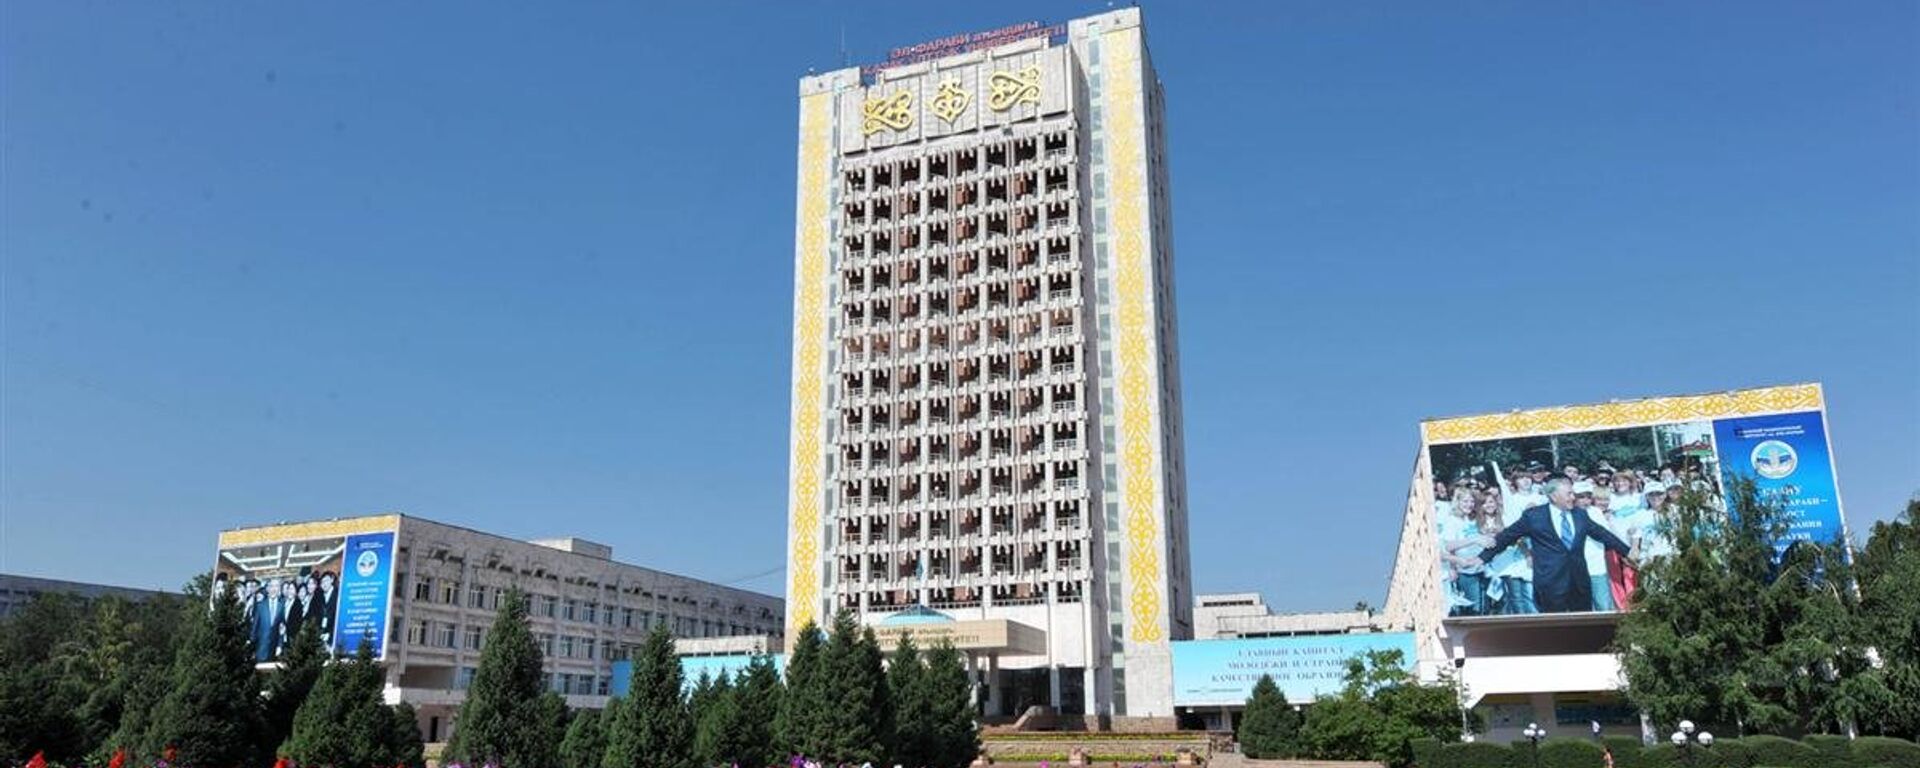 Казахский национальный университет имени Аль-Фараби (КазНУ). Архивное фото - Sputnik Кыргызстан, 1920, 26.05.2022